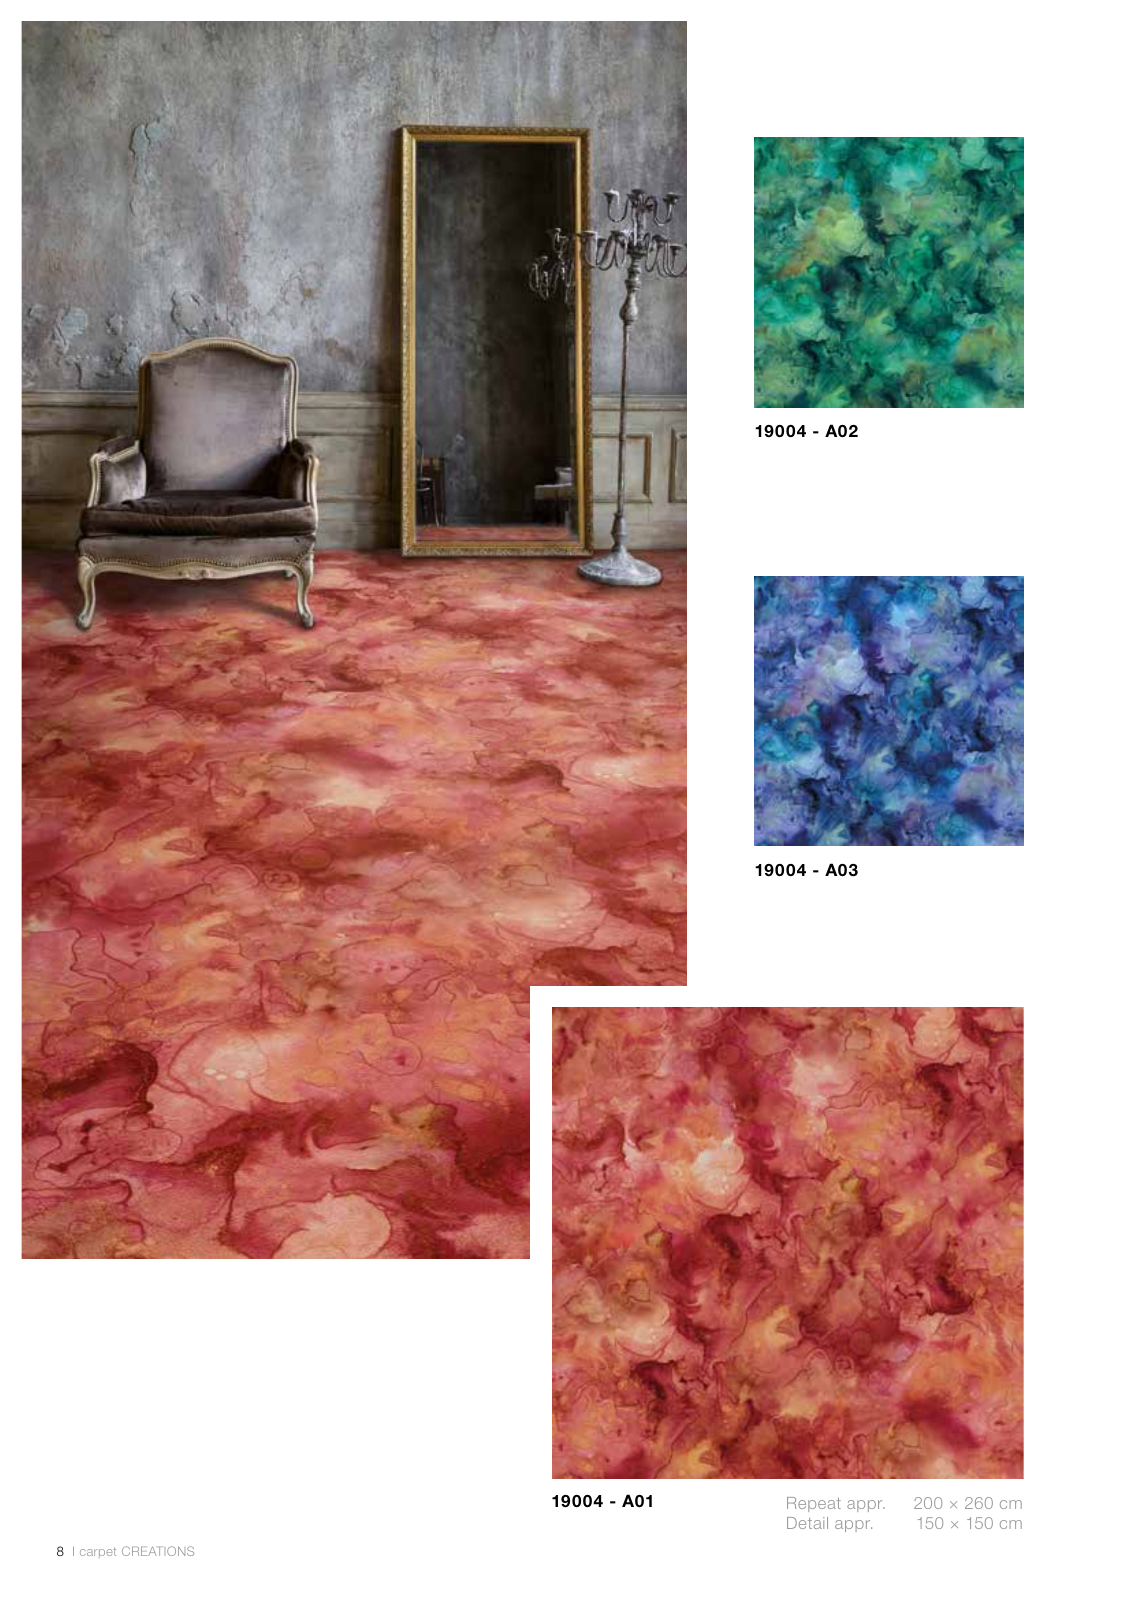 Vorschau Carpet Creations Seite 8